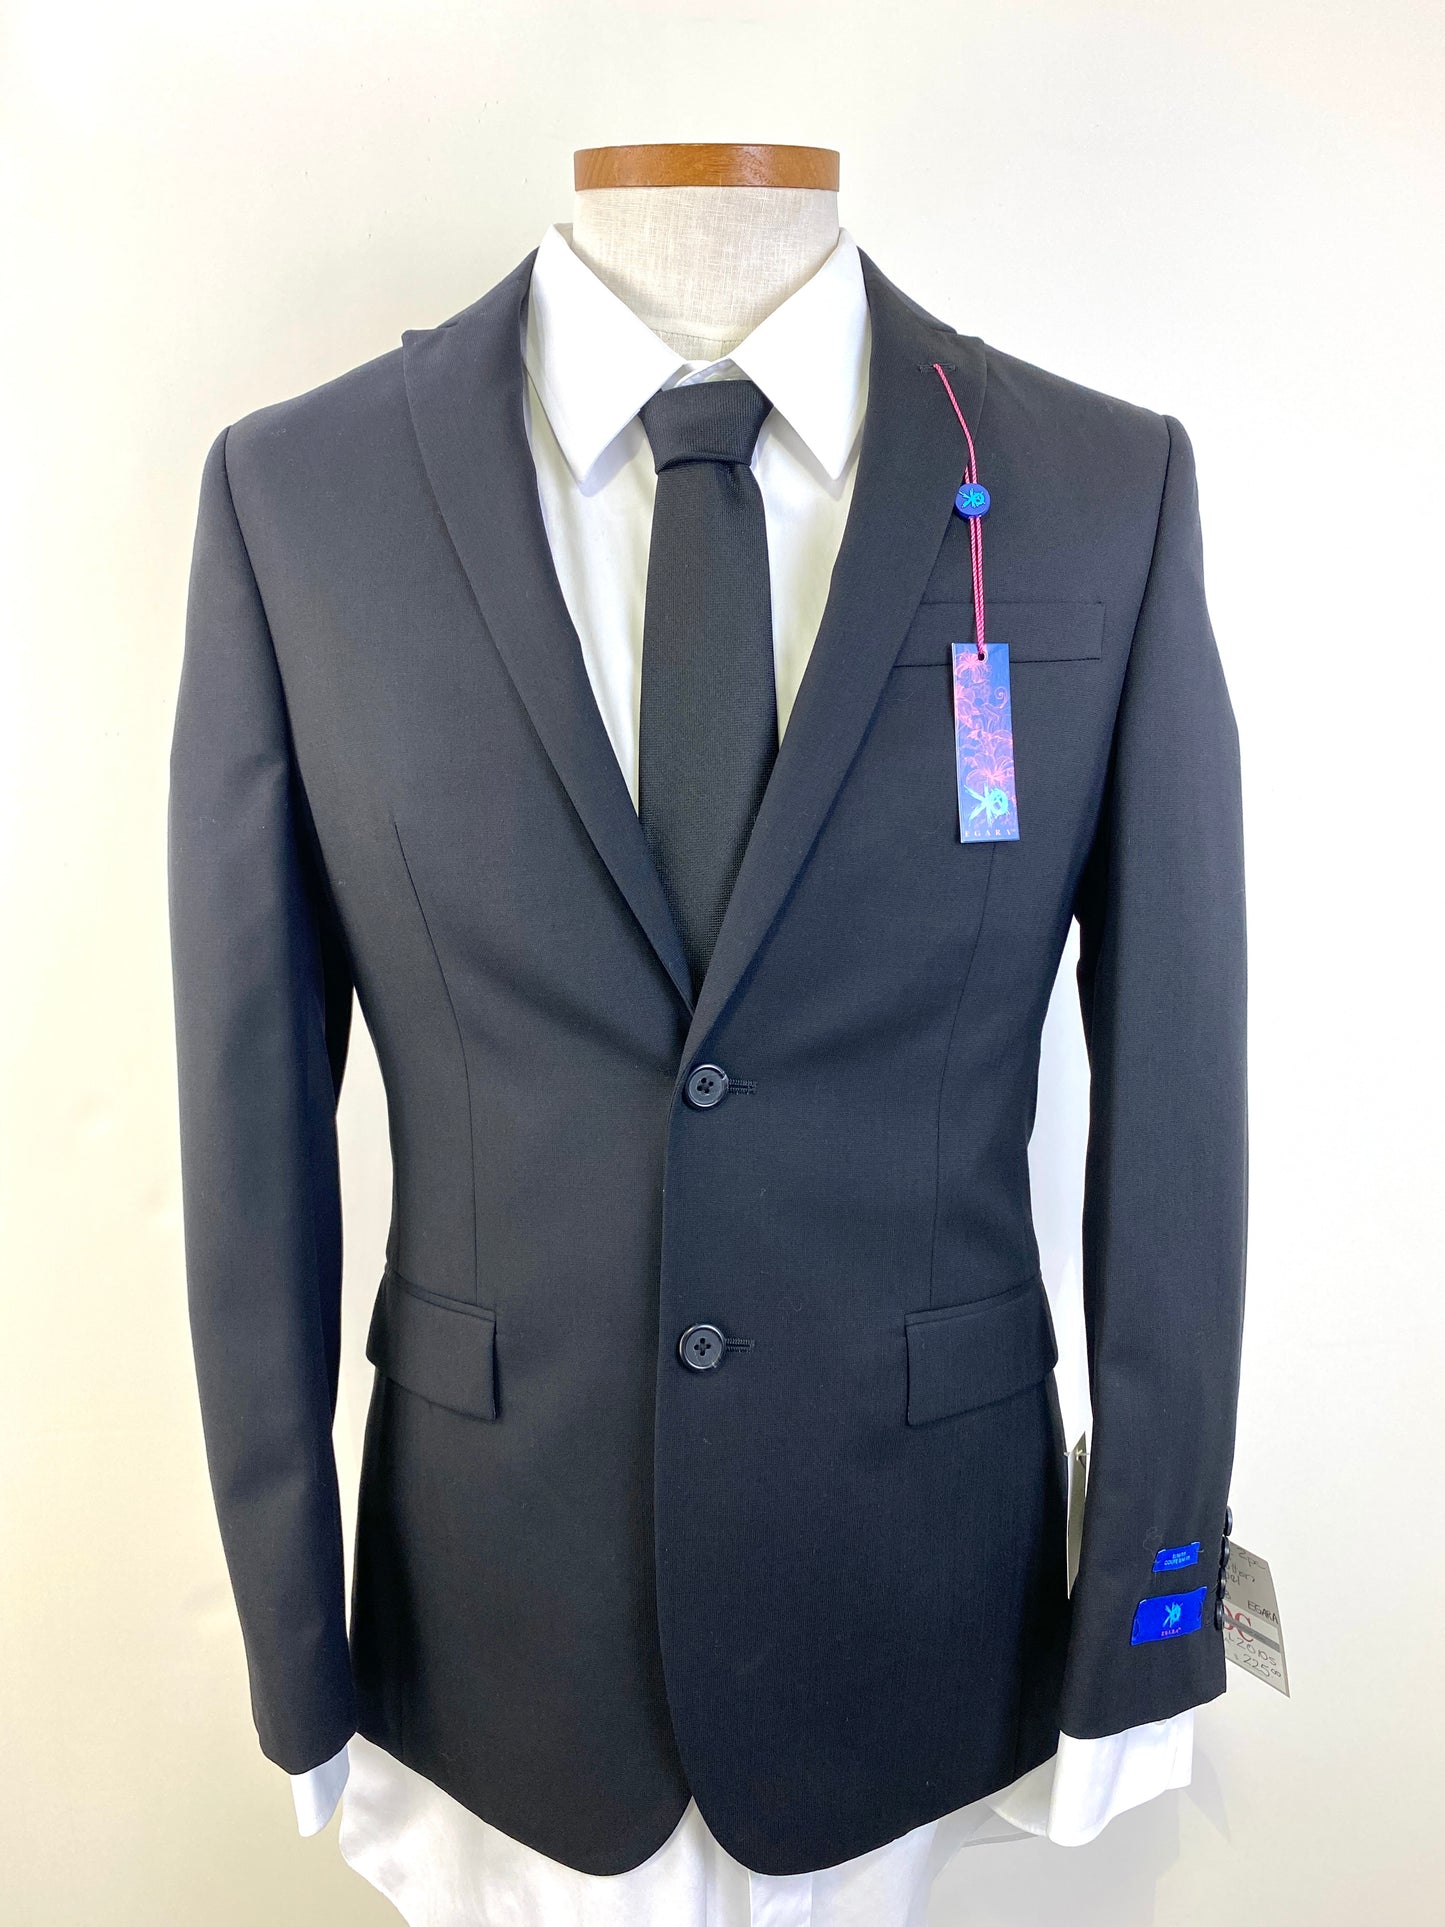 2010s 60s Style Men's Suit, Black Slim Fit 2-Piece Suit, Egara, Peak Lapel's, C38